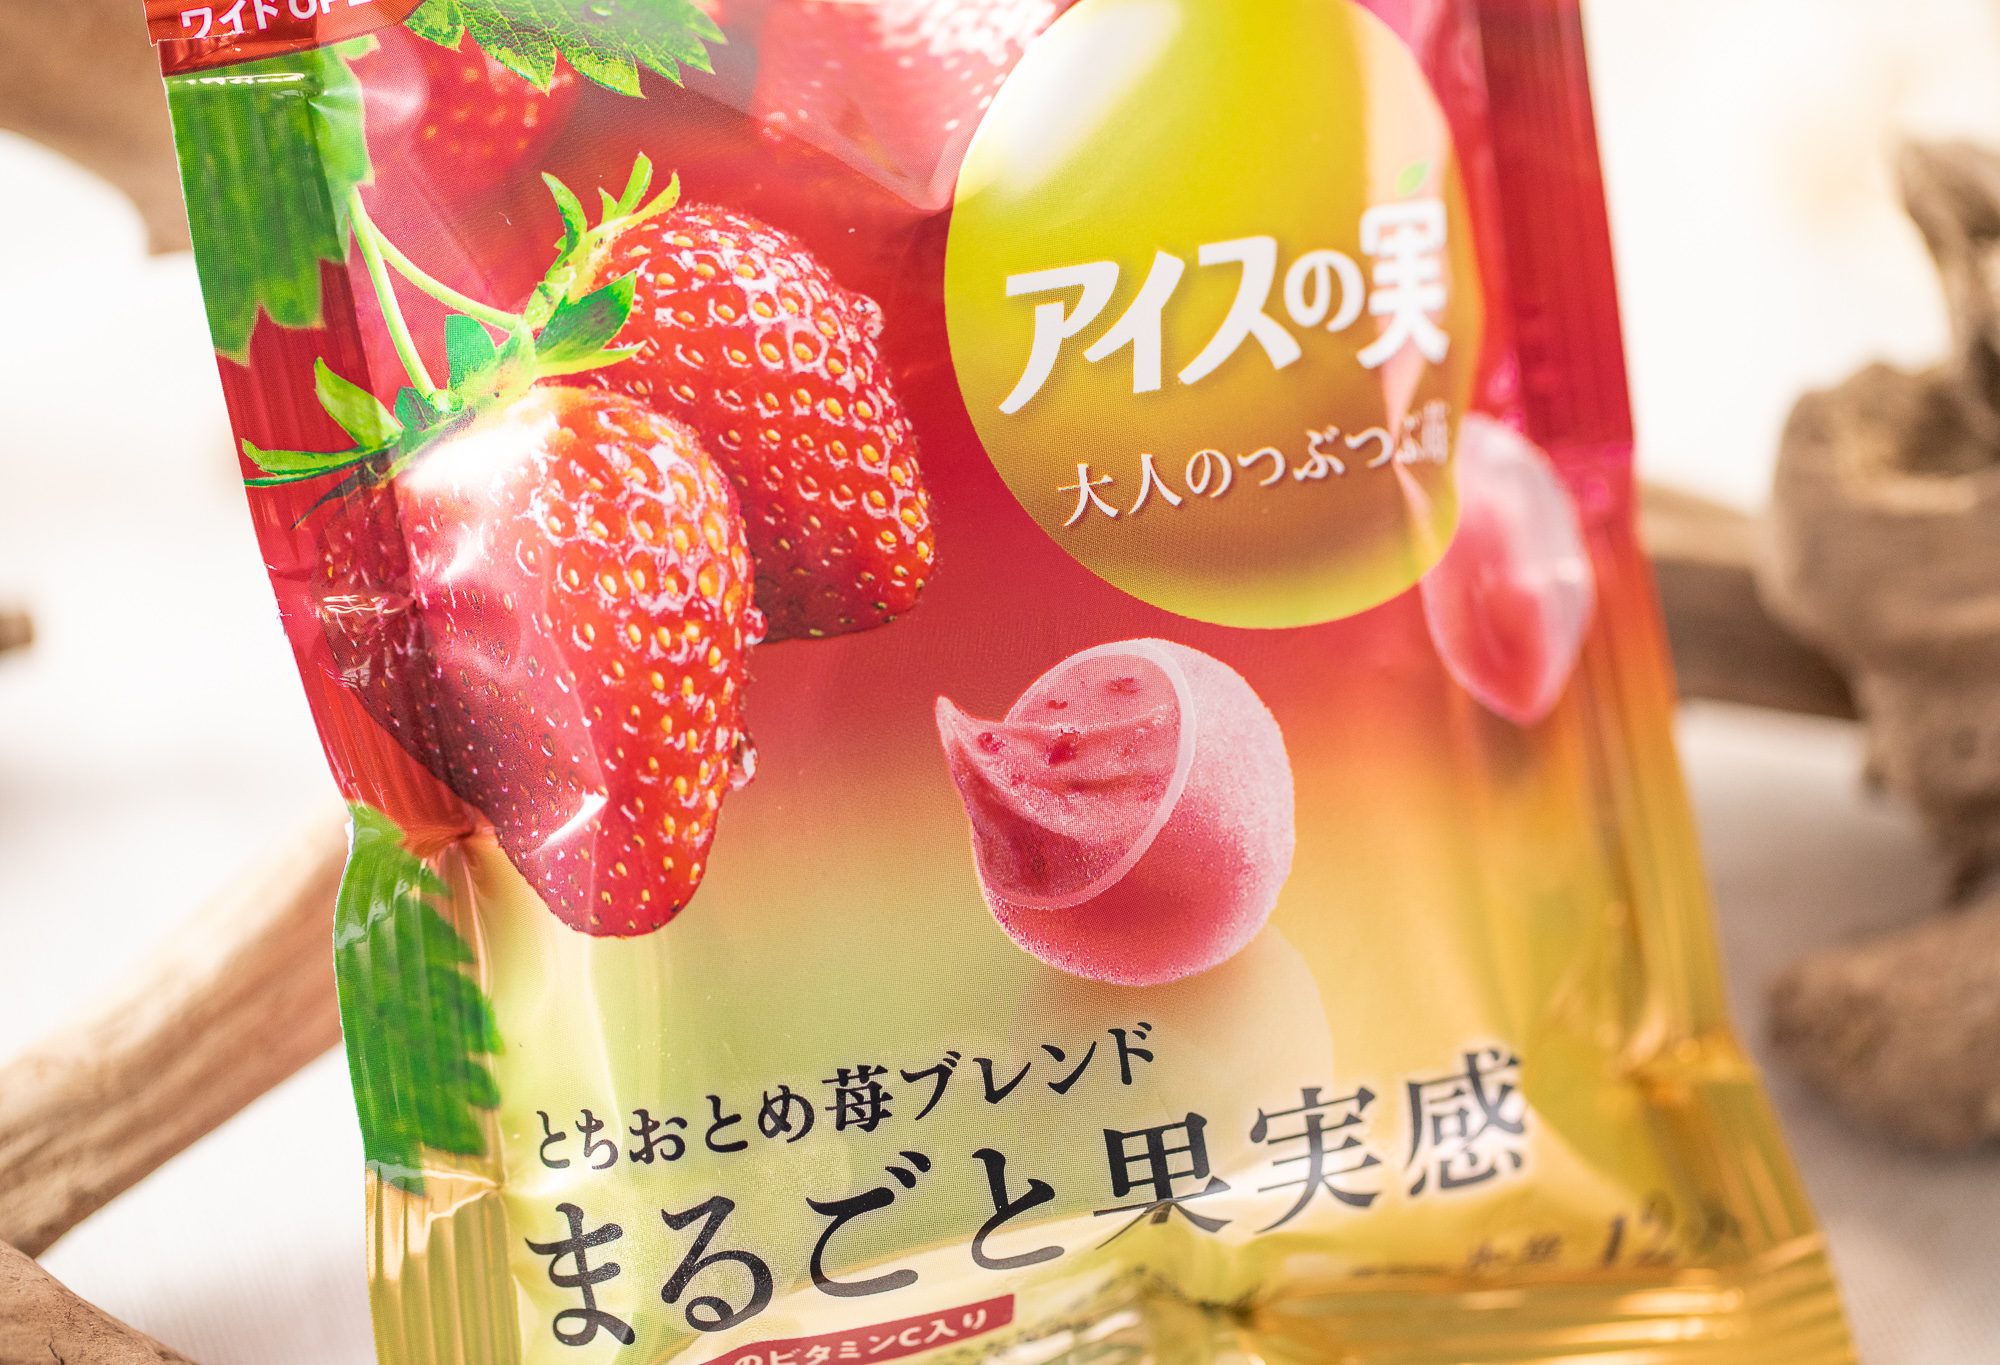 江崎グリコ『アイスの実 大人のつぶつぶ苺』はほどよく強い酸味と上品な苺の甘みでとろけるような美味しさのシャクトロひとくち氷菓！